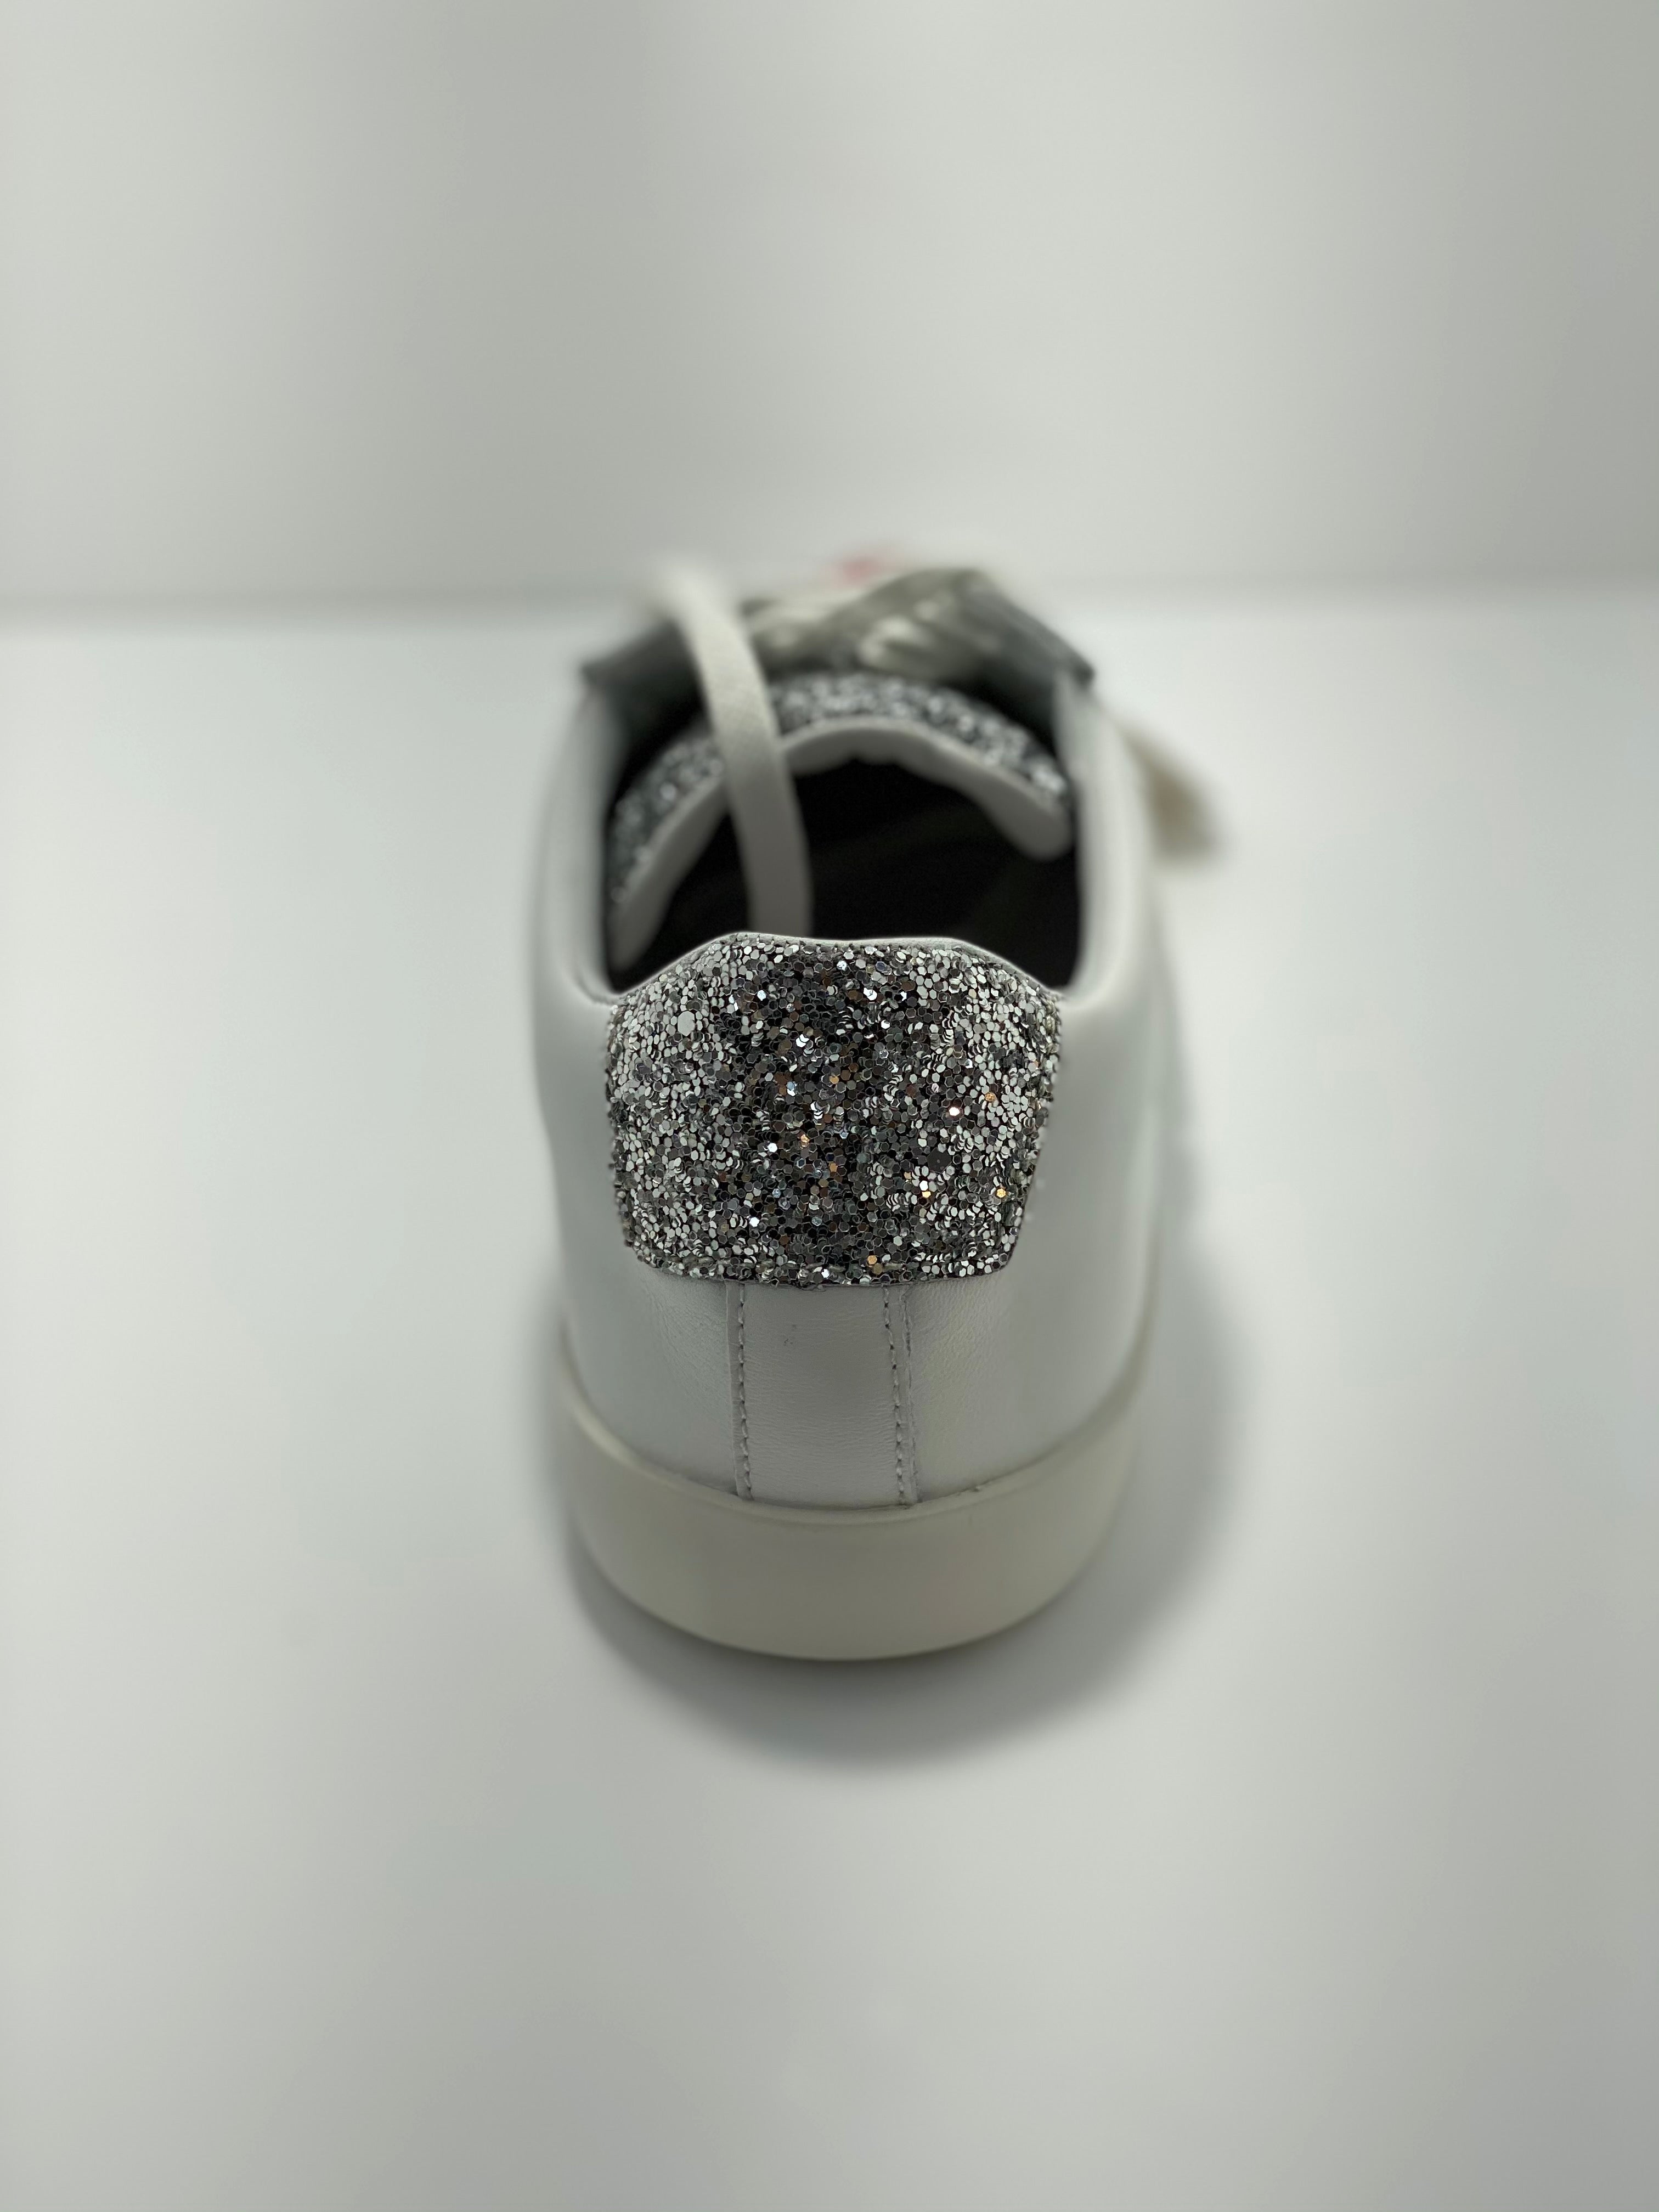 Prime Glitter Rollie Sneaker